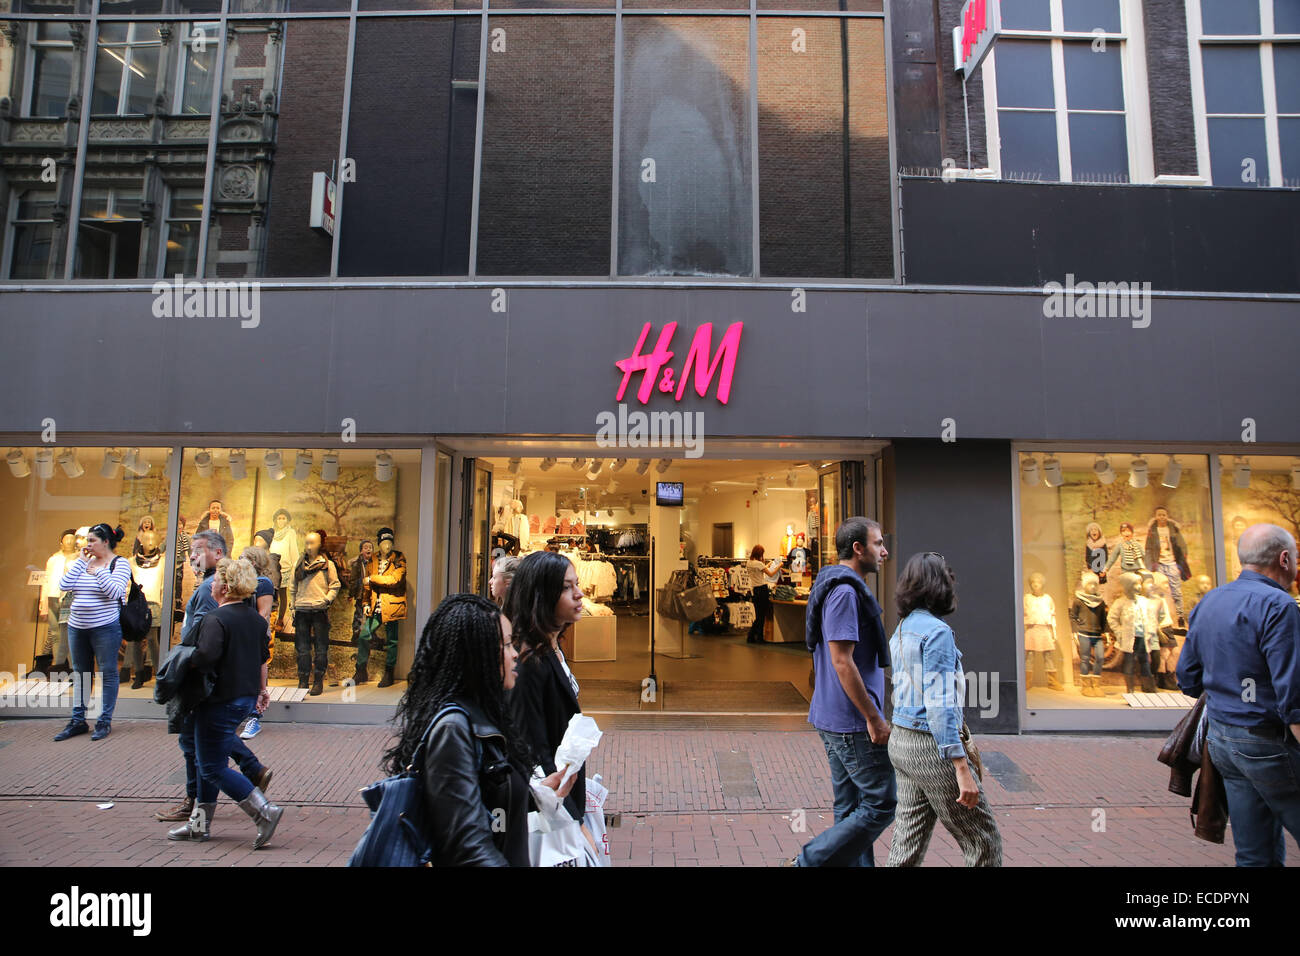 Magasin de vêtements h&m amsterdam hollande Pays-Bas Photo Stock - Alamy